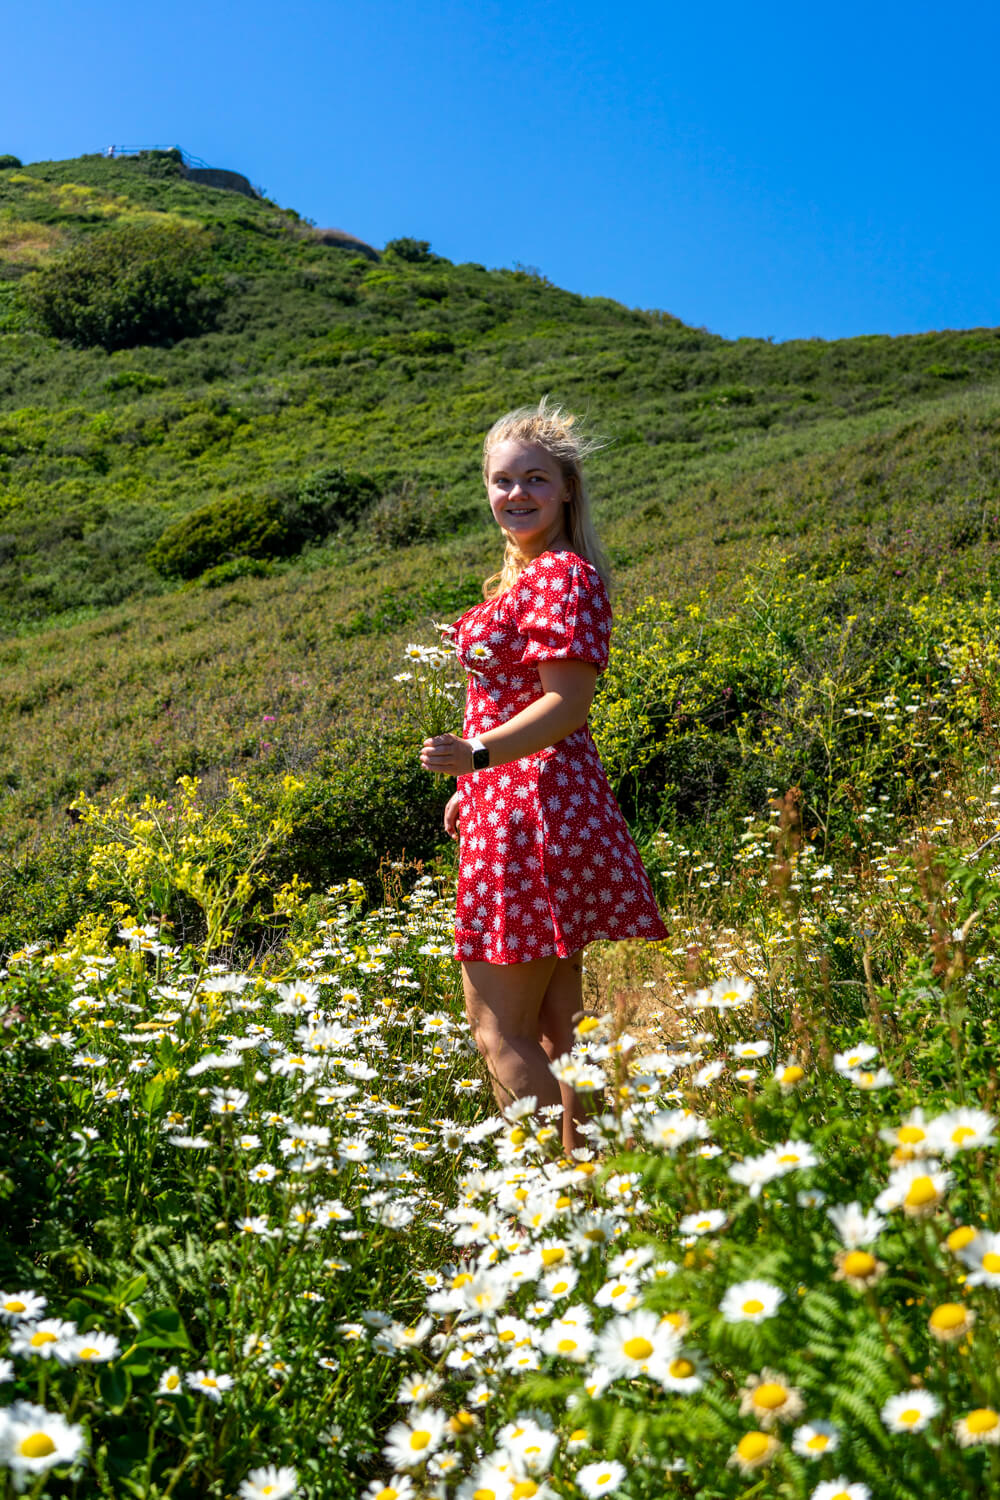 gemma standing in a flower field holding flowers 